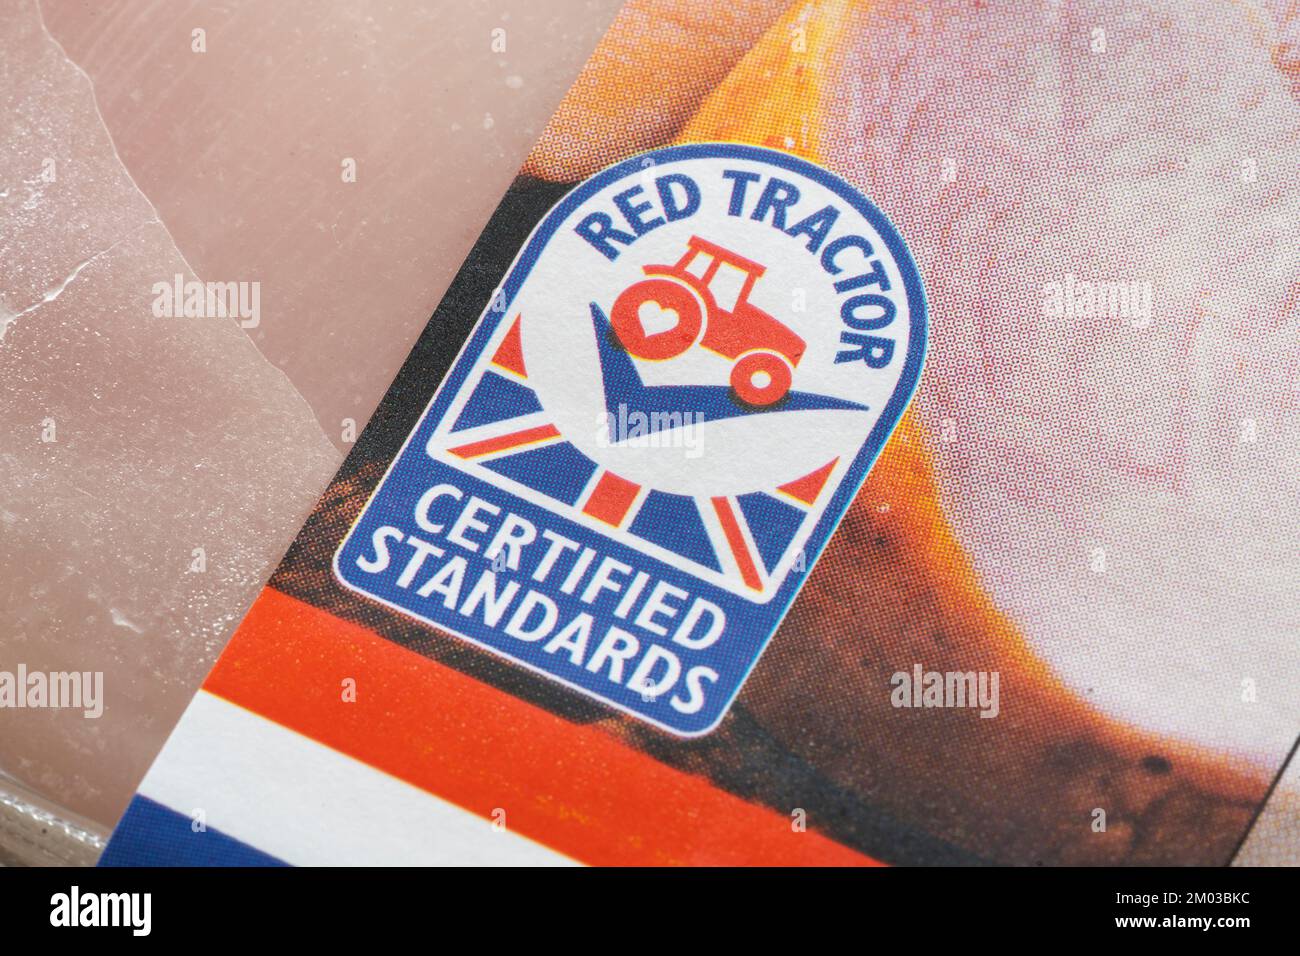 Gros plan sur le logo Red Tractor. Assured Food Standards est une entreprise britannique qui délivre des licences pour la marque de qualité Red Tractor, un programme de certification de produit Banque D'Images